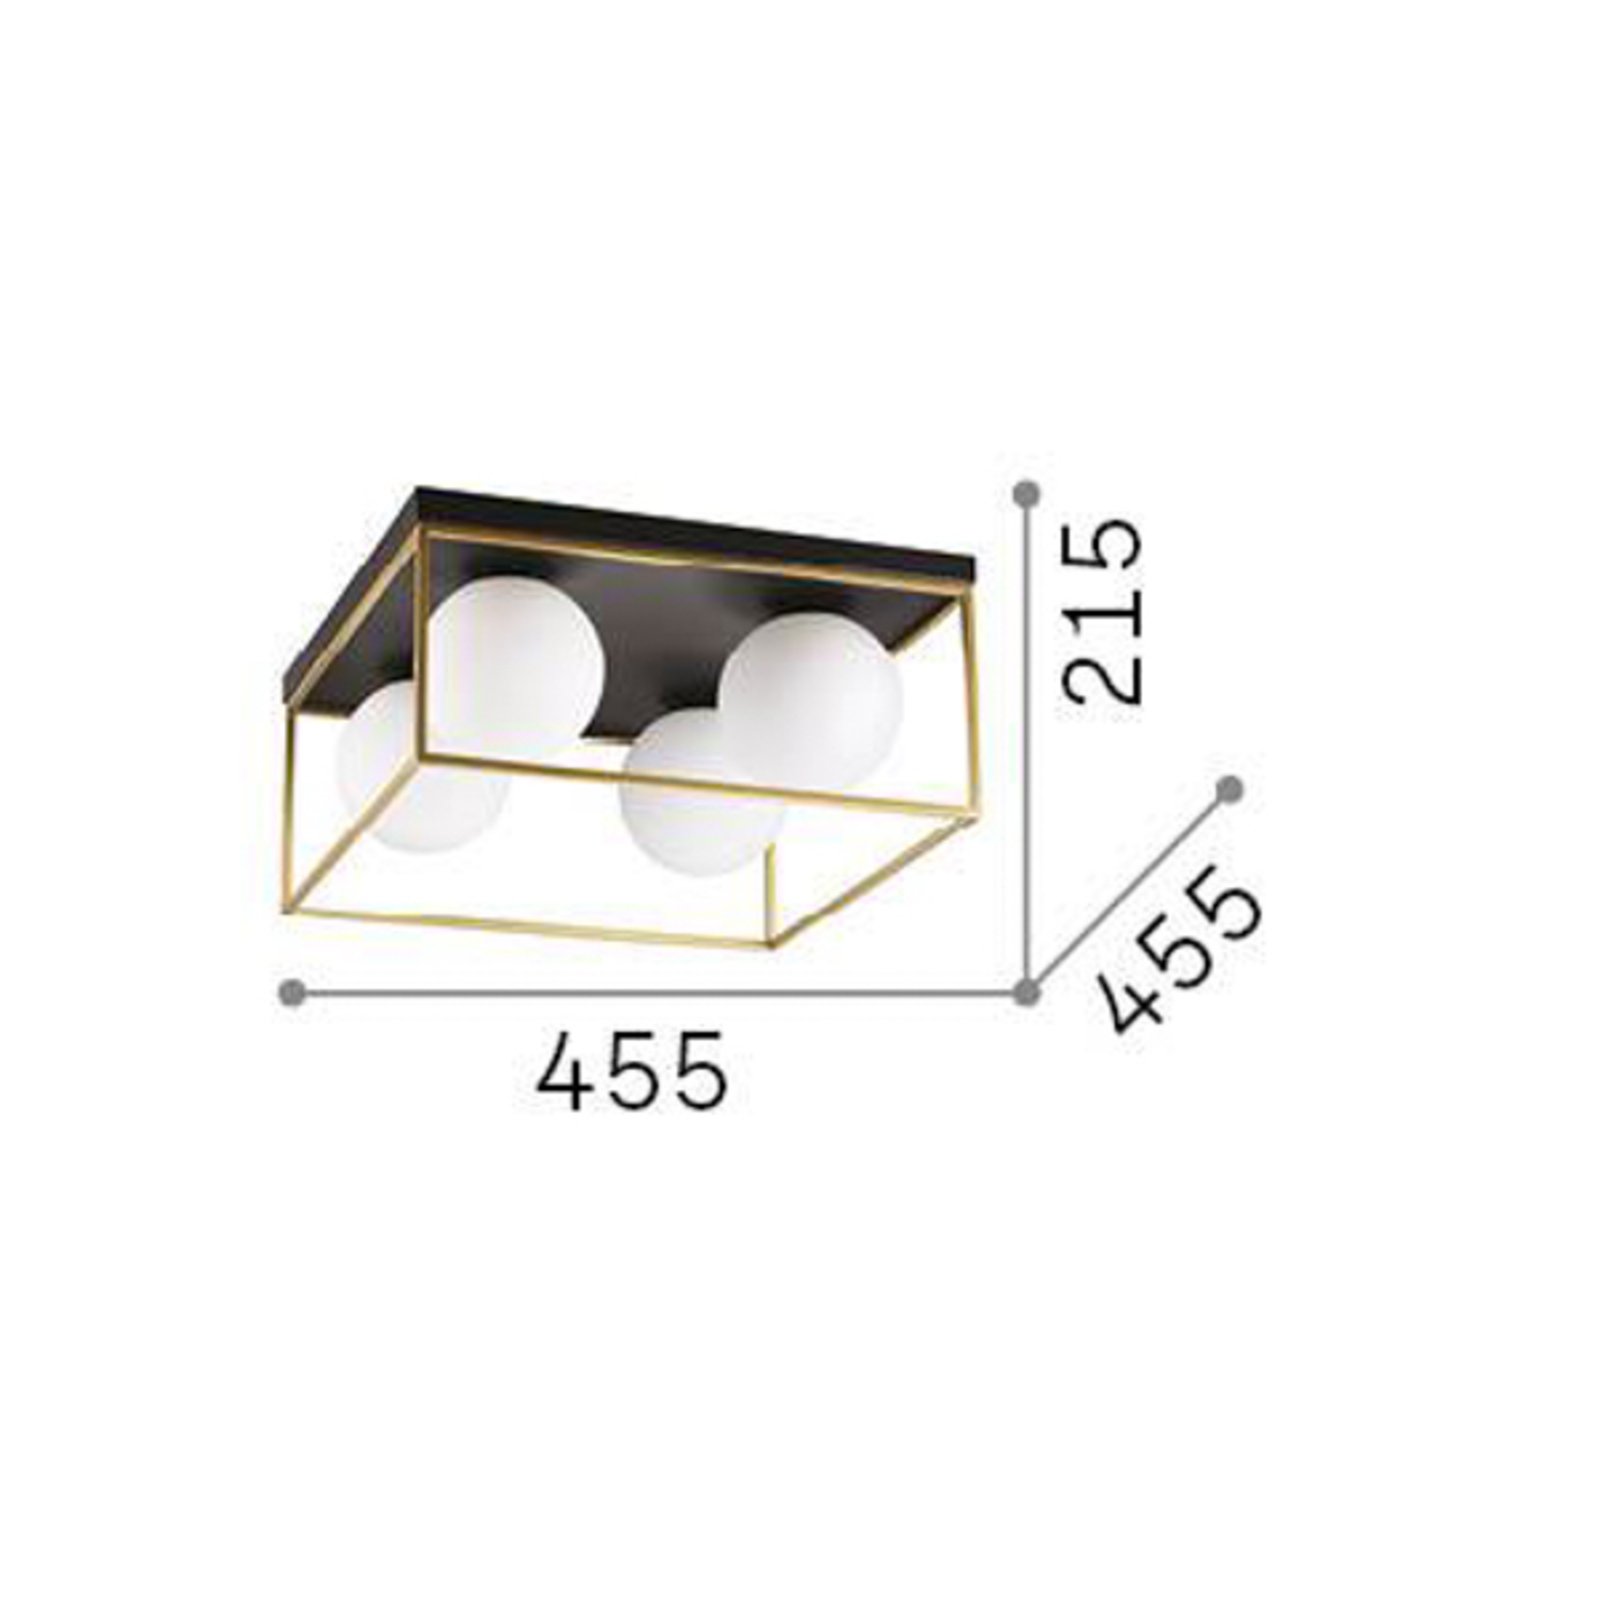 Ideal Lux plafonnier Lingotto à 4 lampes, noir, verre opalin